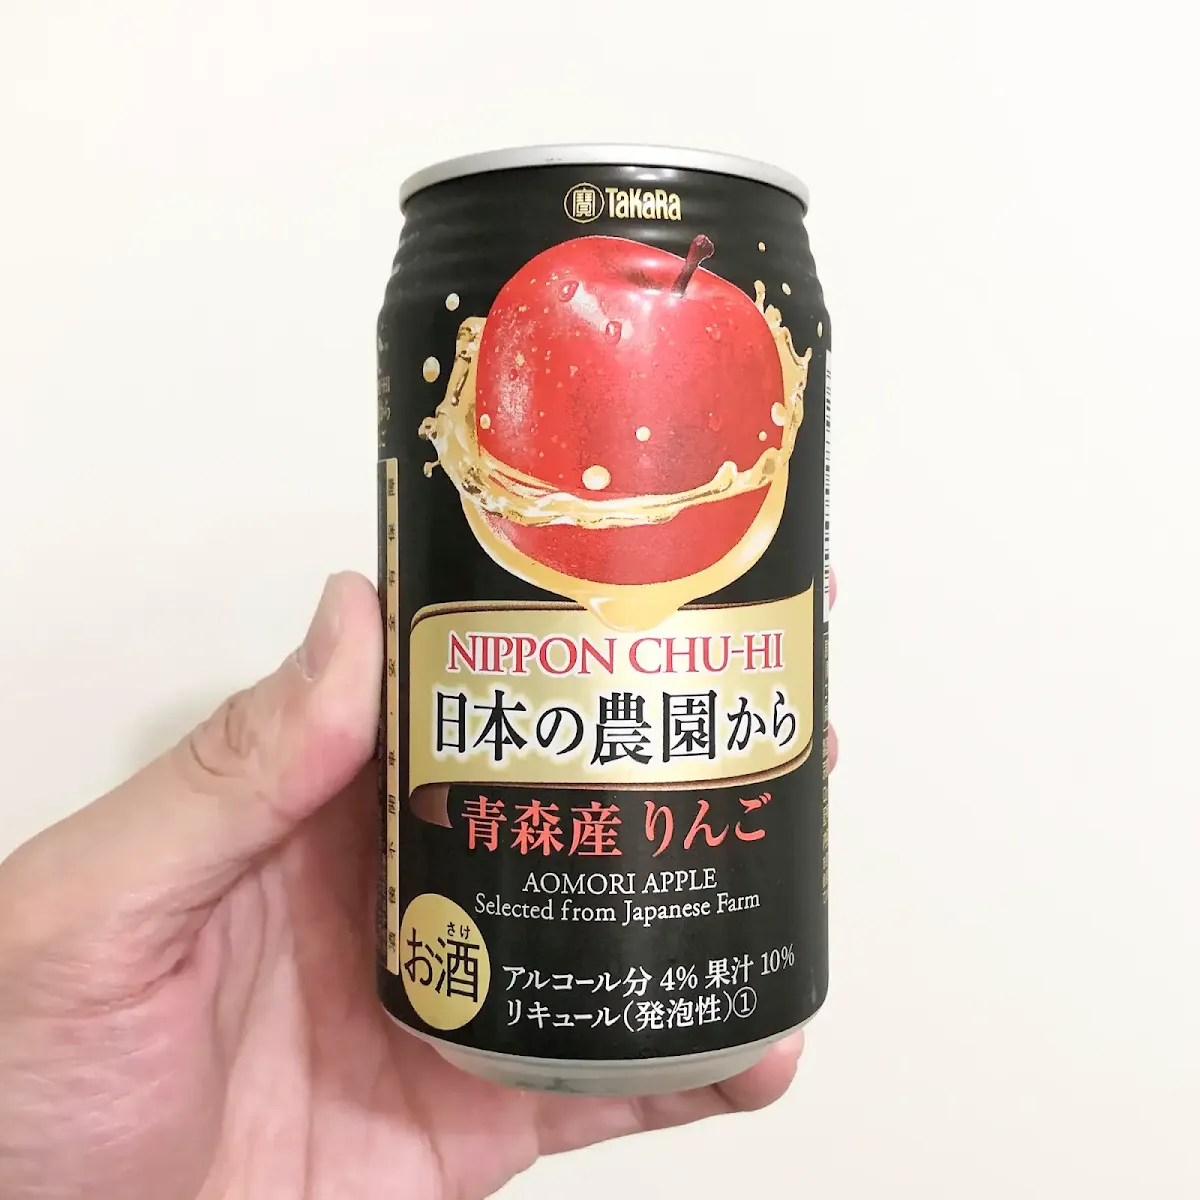 寶酒造日本農園/青森蘋果 (日本の農園から/青森産りんご)